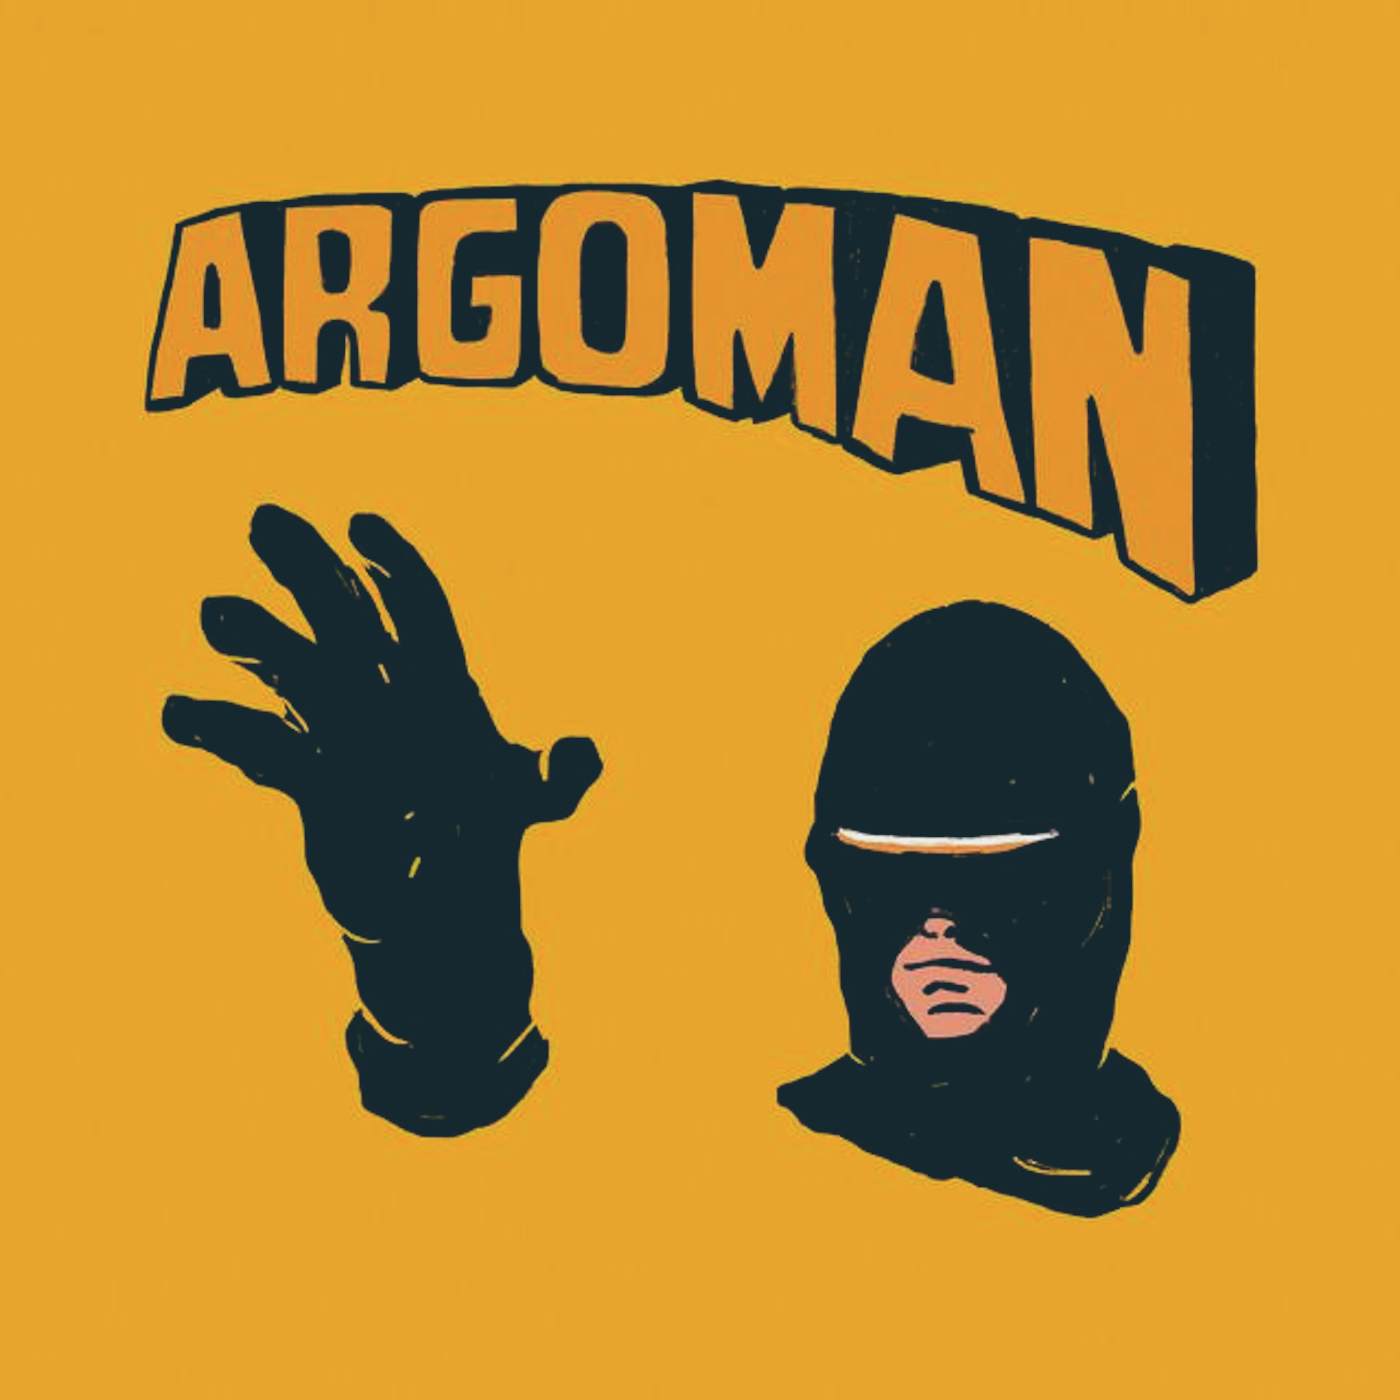 Argoman